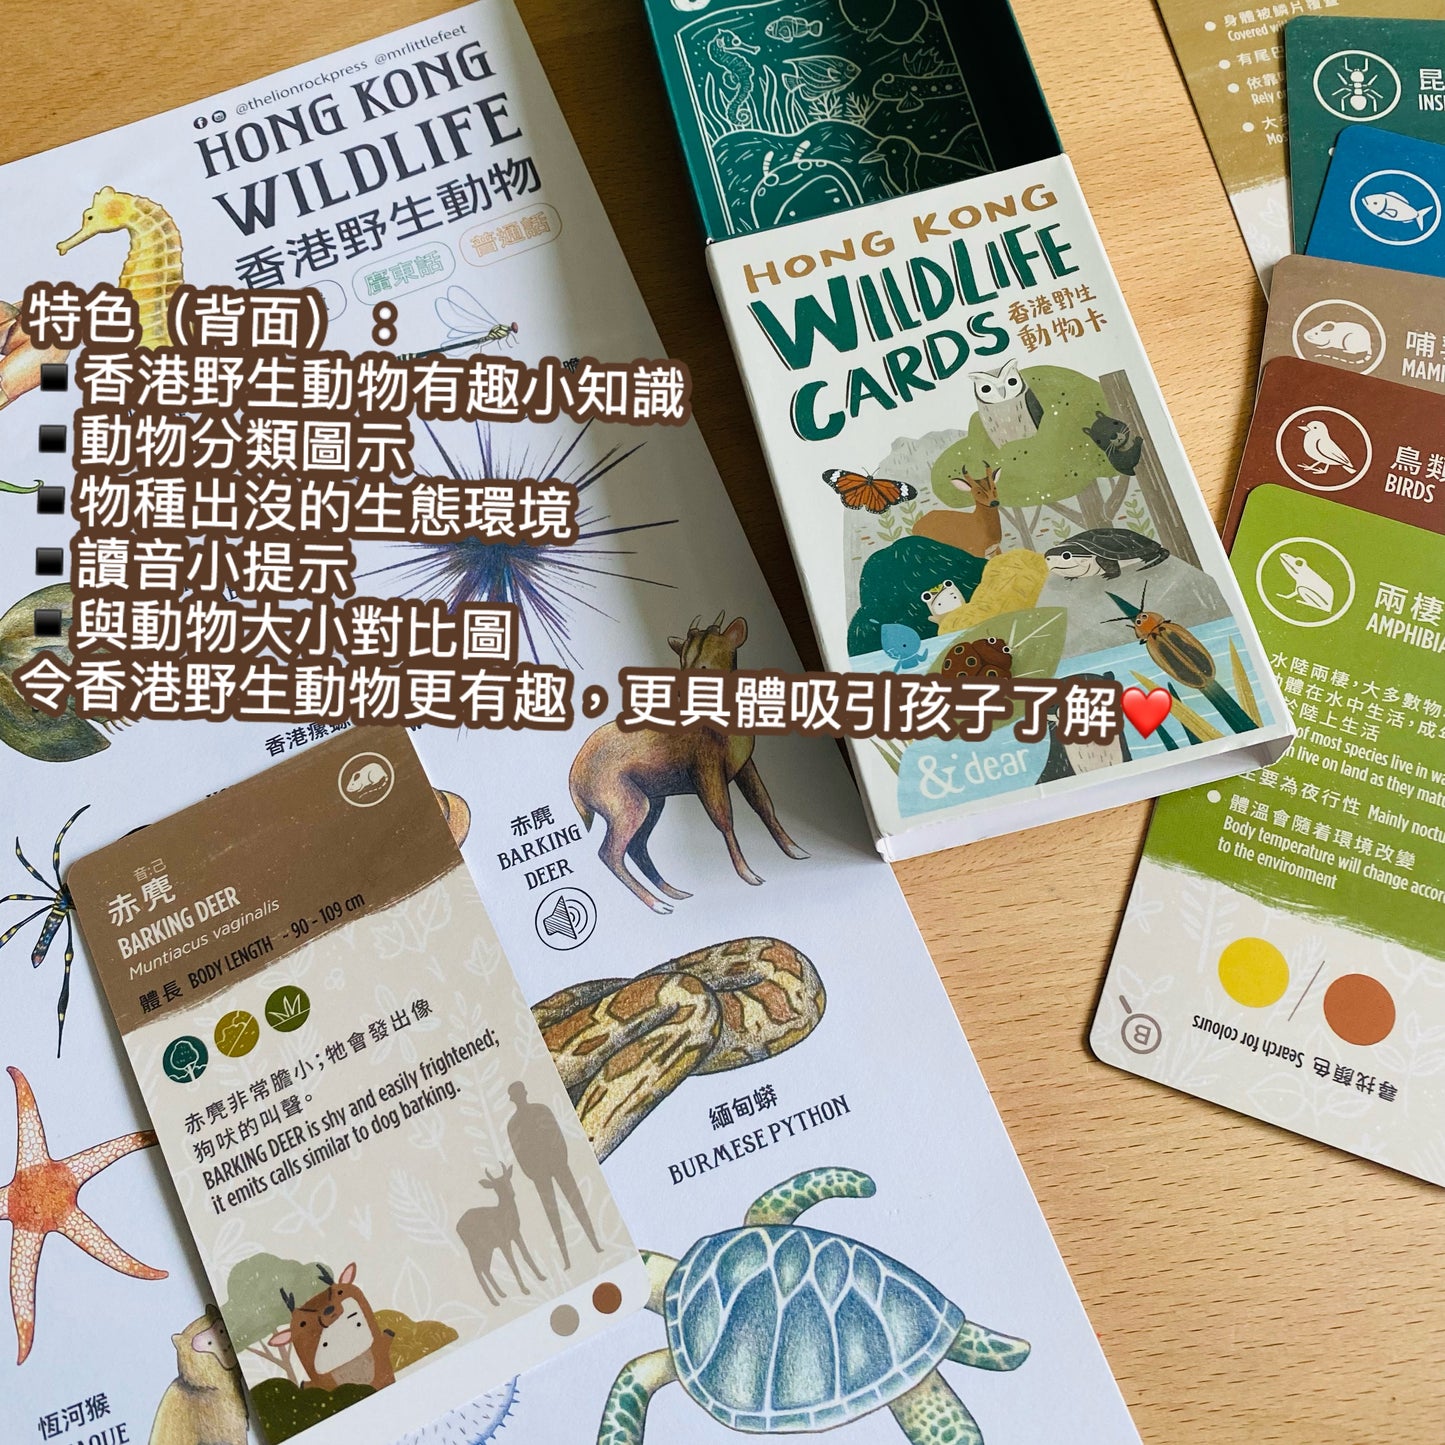 香港野生動物卡 Hong Kong Wildlife Cards（中英對照）